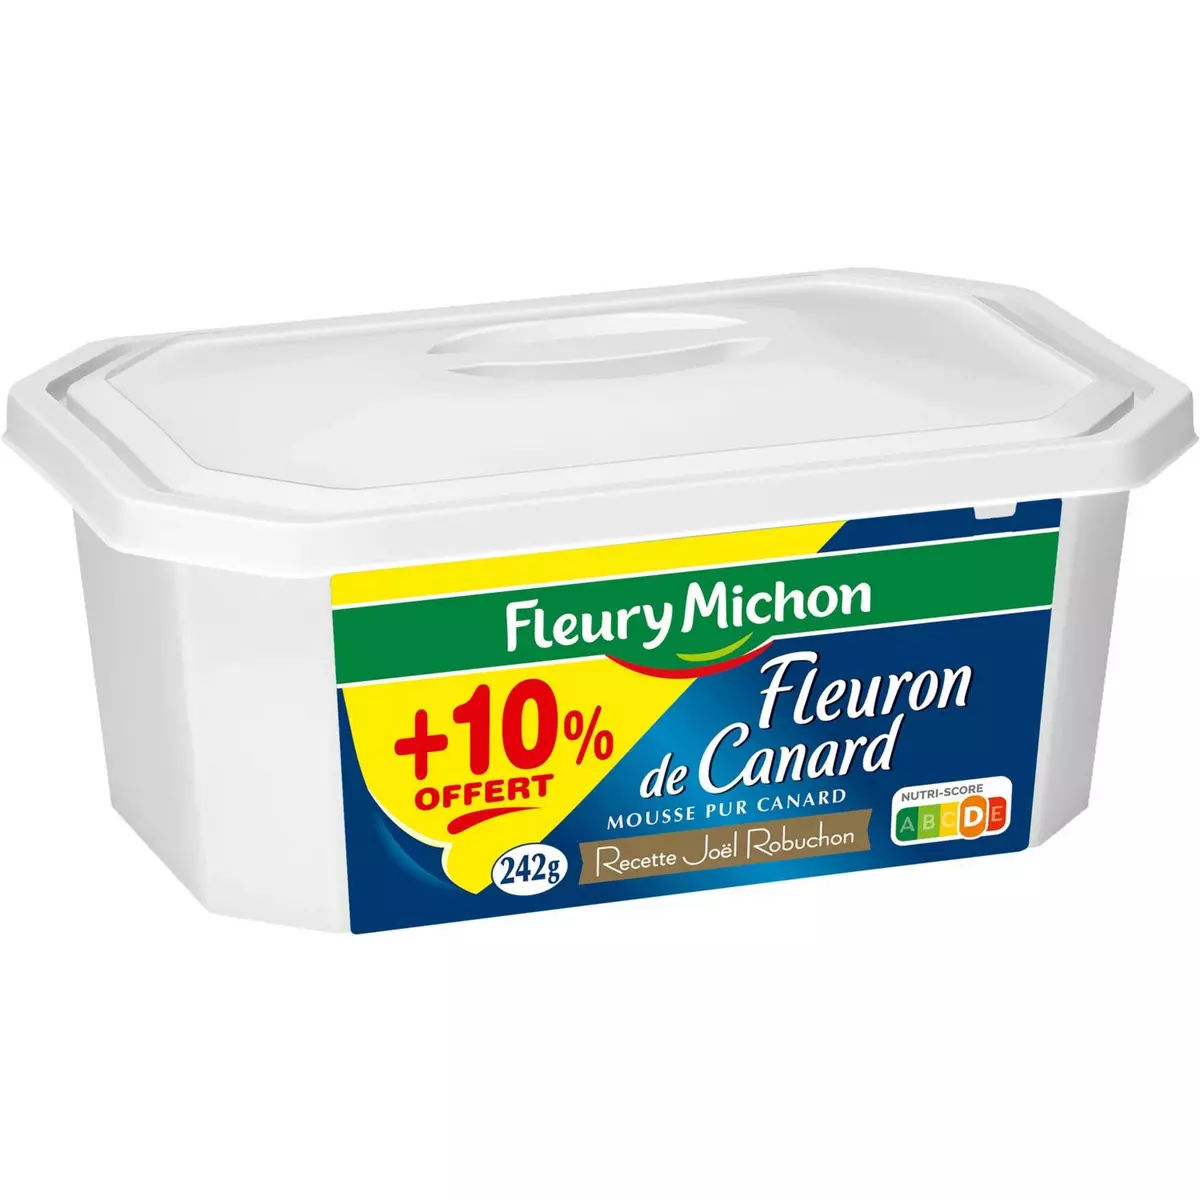 FLEURY MICHON Fleuron de canard mousse +10% offert 220g